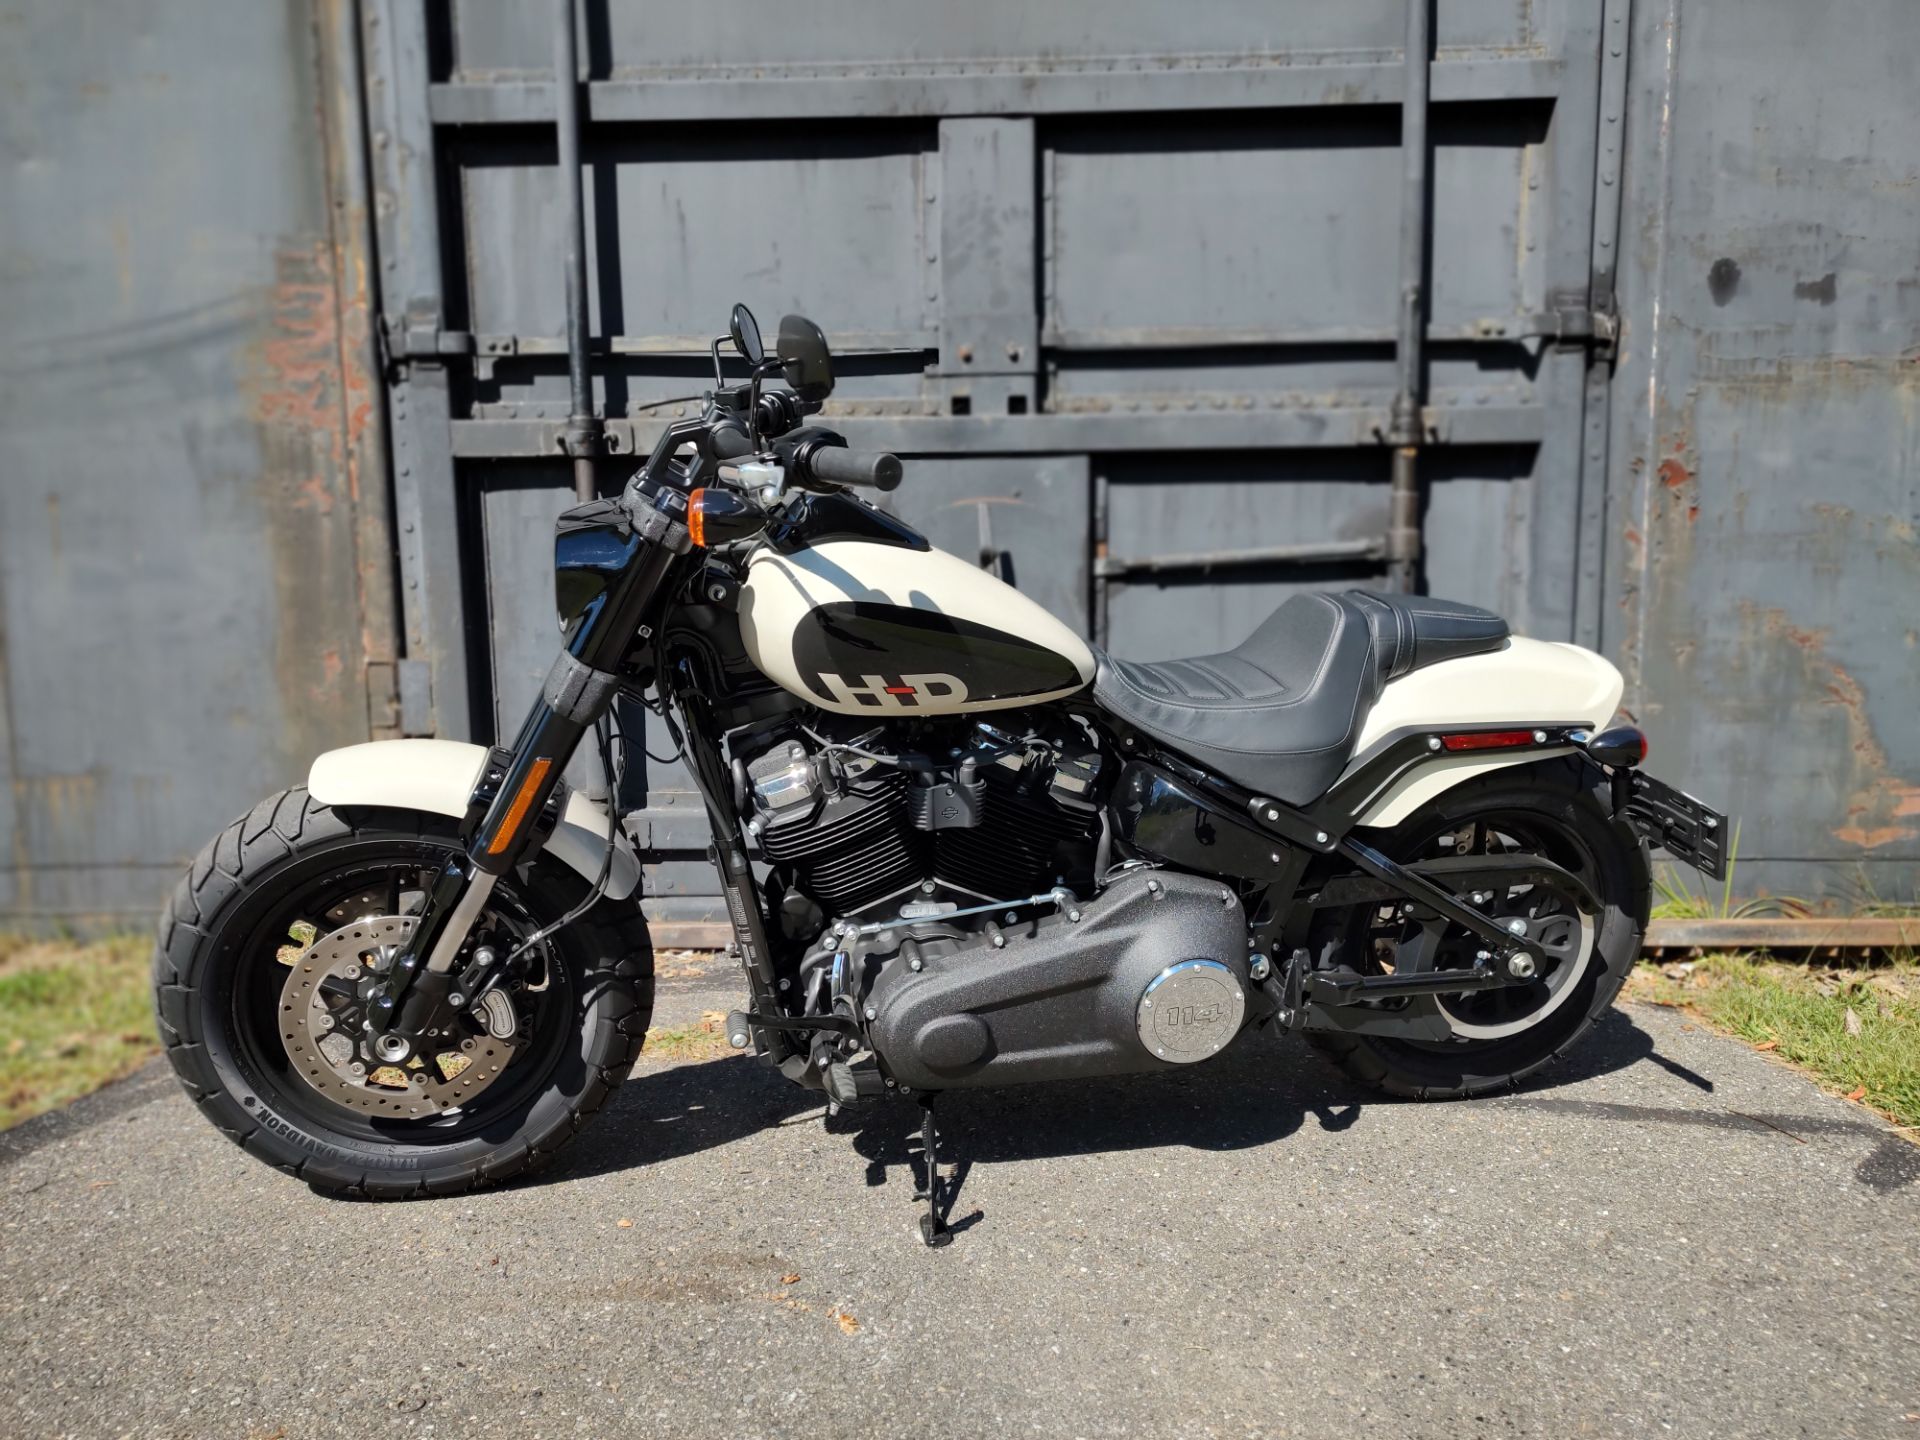 2022 Harley-Davidson Fat Bob in Augusta, Maine - Photo 3